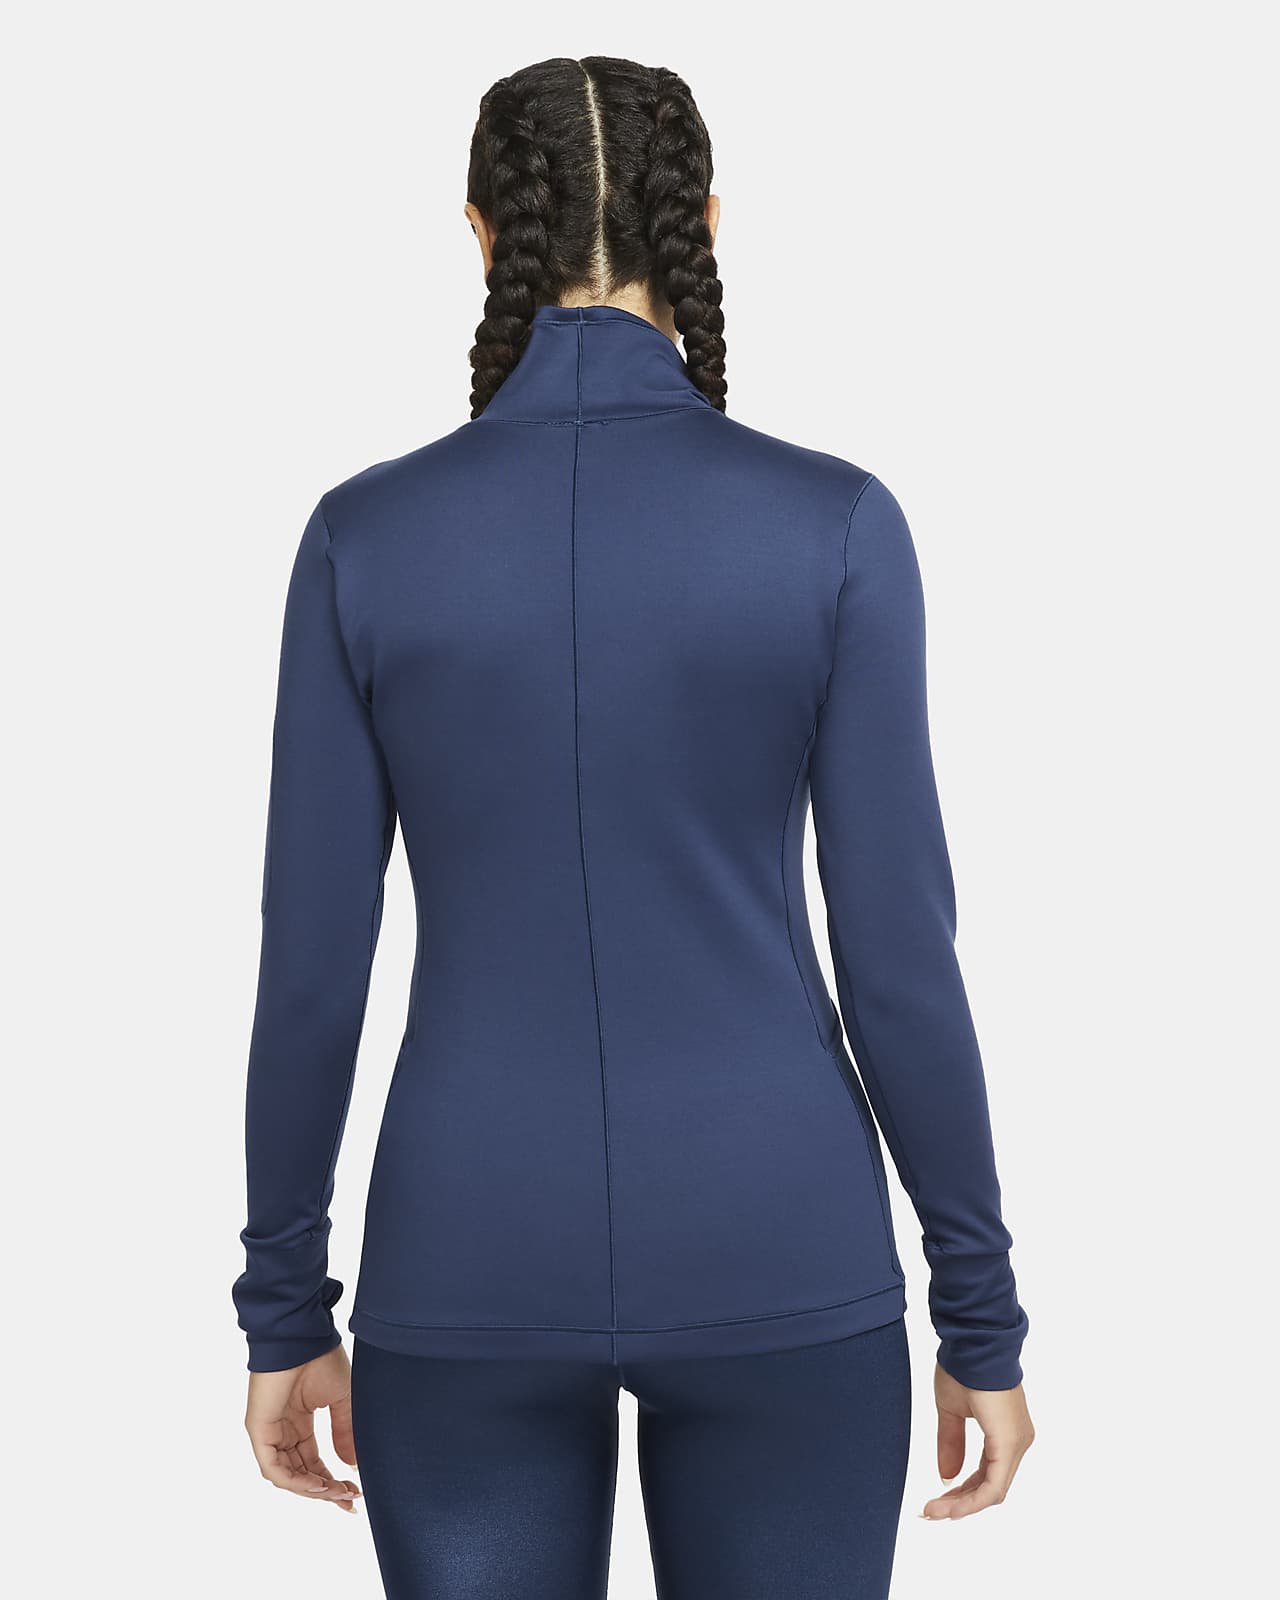 Nike Women's Long-Sleeve Top. Nike.com